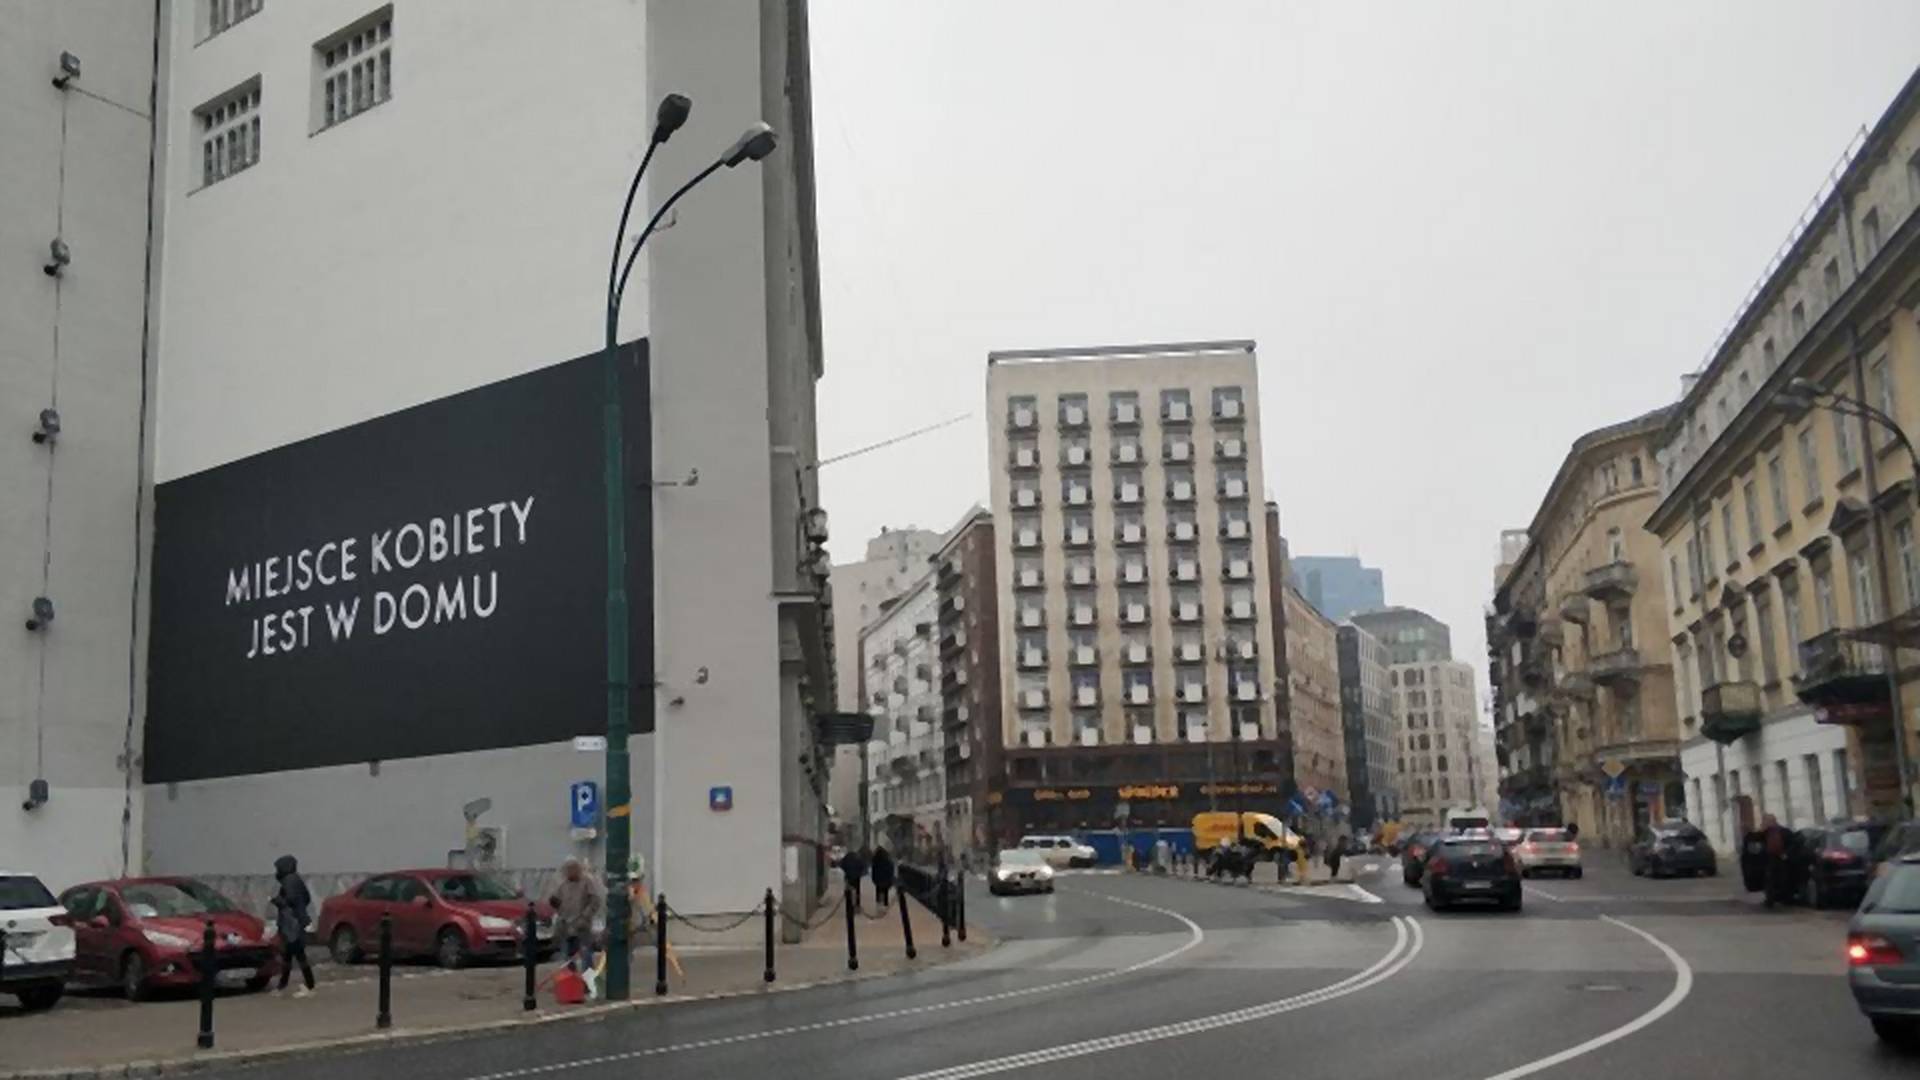 "Miejsce kobiety jest w domu". Kontrowersyjny billboard Netfliksa w centrum Warszawy